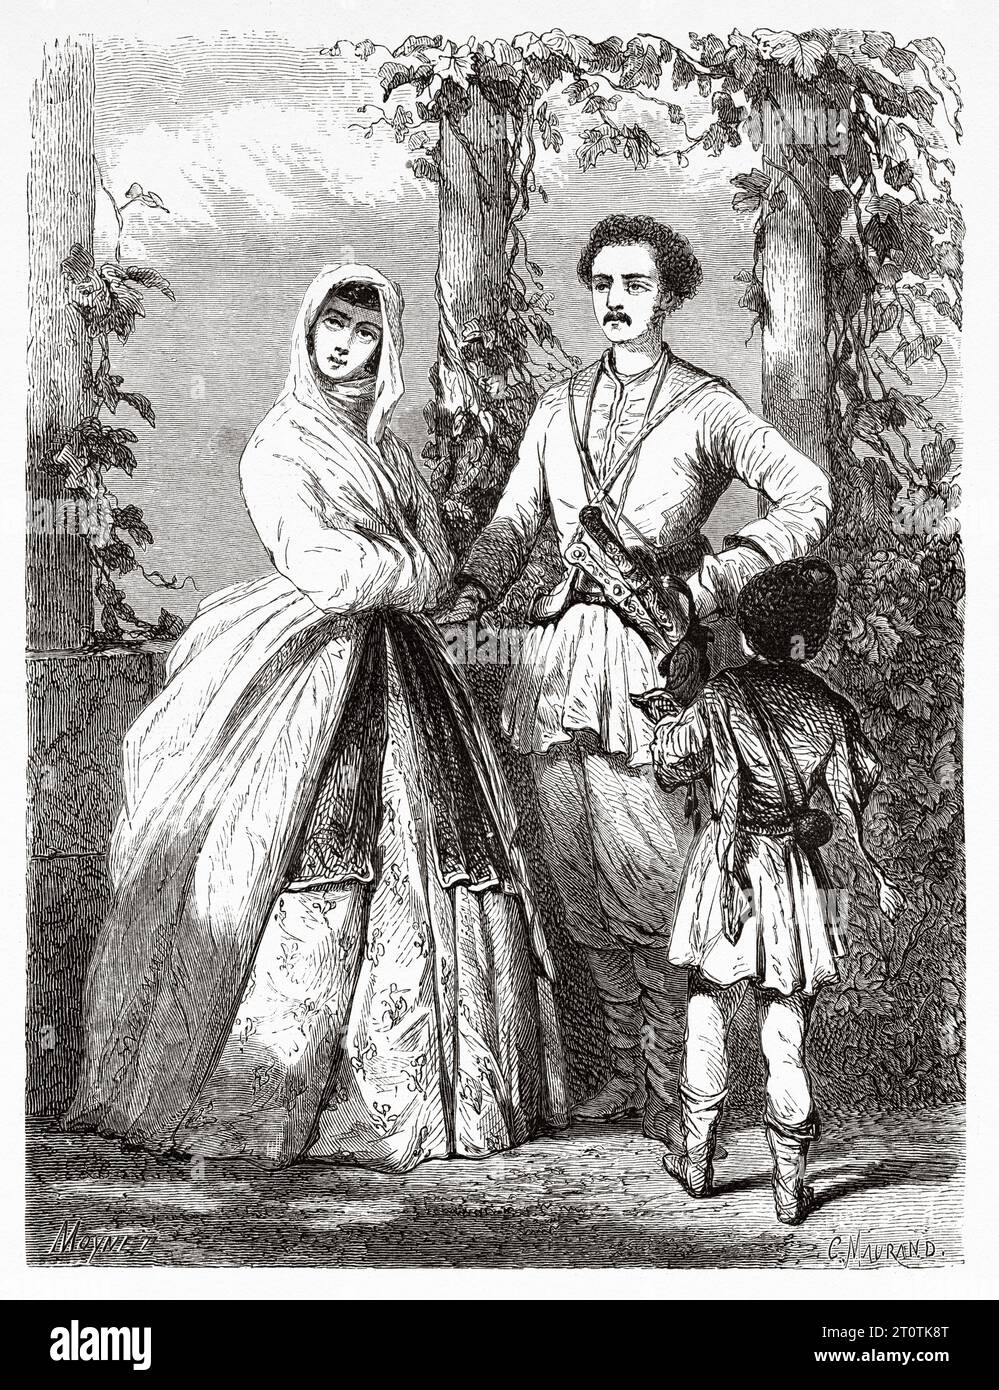 Georgische Kostüme, Georgien. Reise zum Schwarzen Meer und zum Kaspischen Meer 1858 mit Moynet. Alter Stich aus dem 19. Jahrhundert aus Le Tour du Monde 1860 Stockfoto